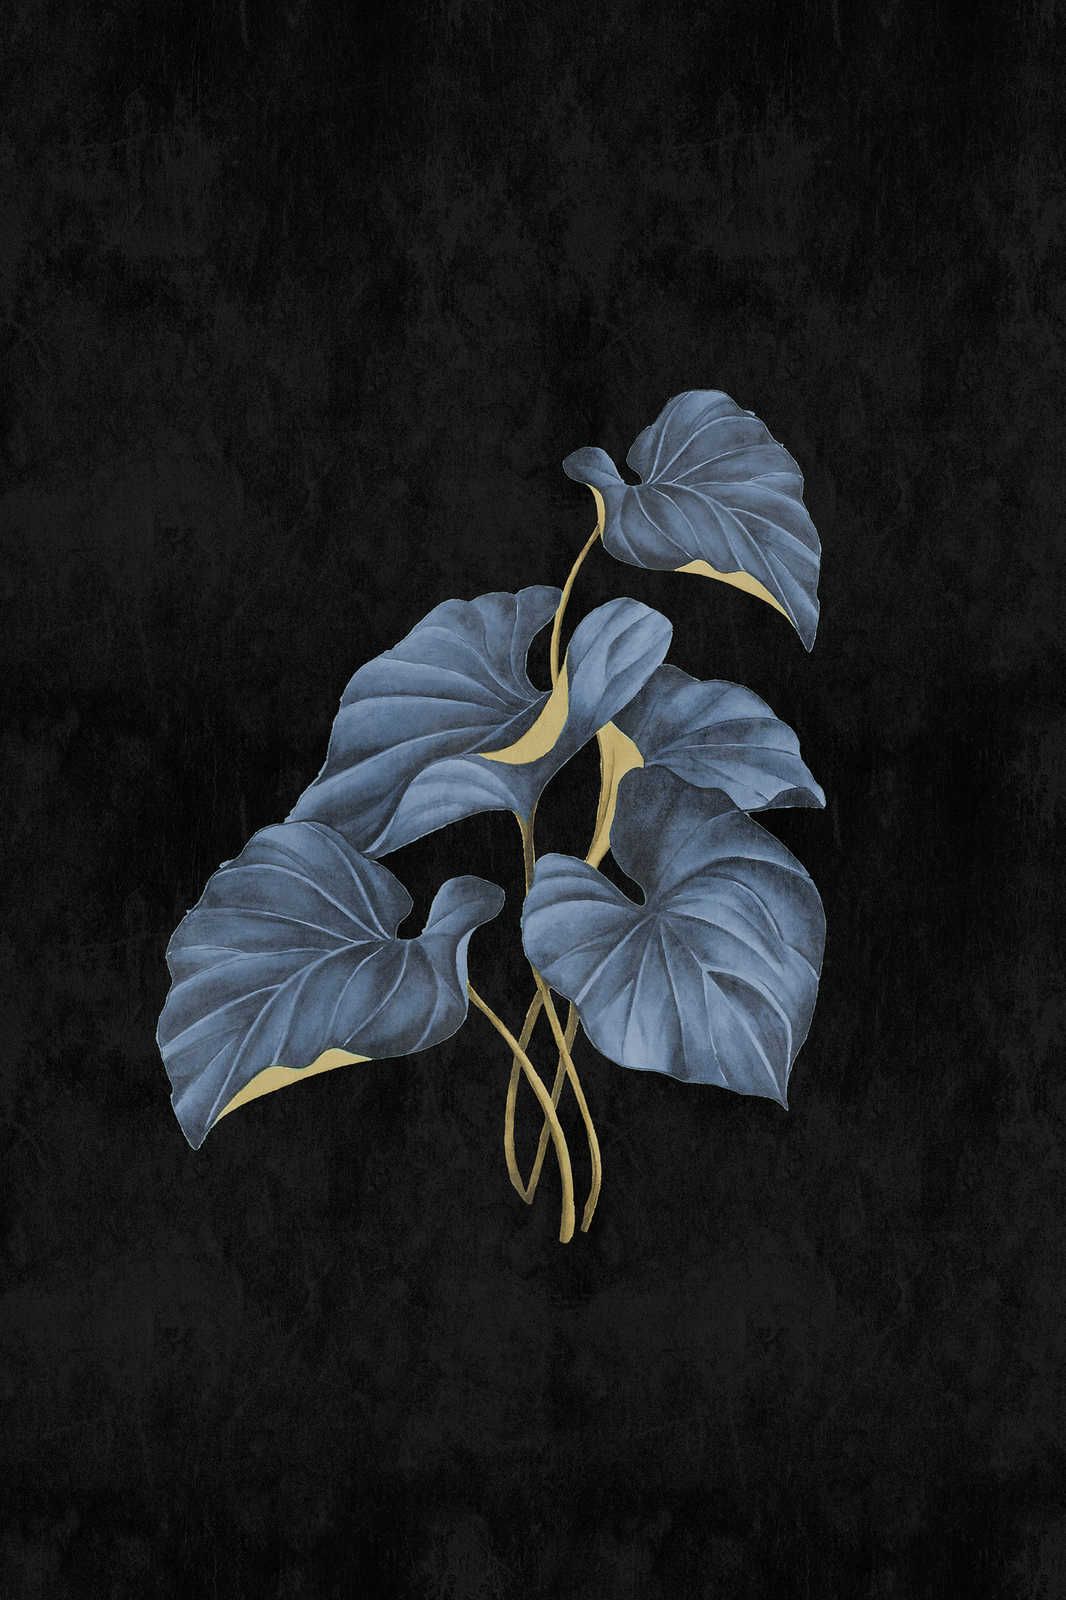             Fiji 1 - Schwarzes Leinwandbild Blaue Blätter mit Gold Akzent – 0,80 m x 1,20 m
        